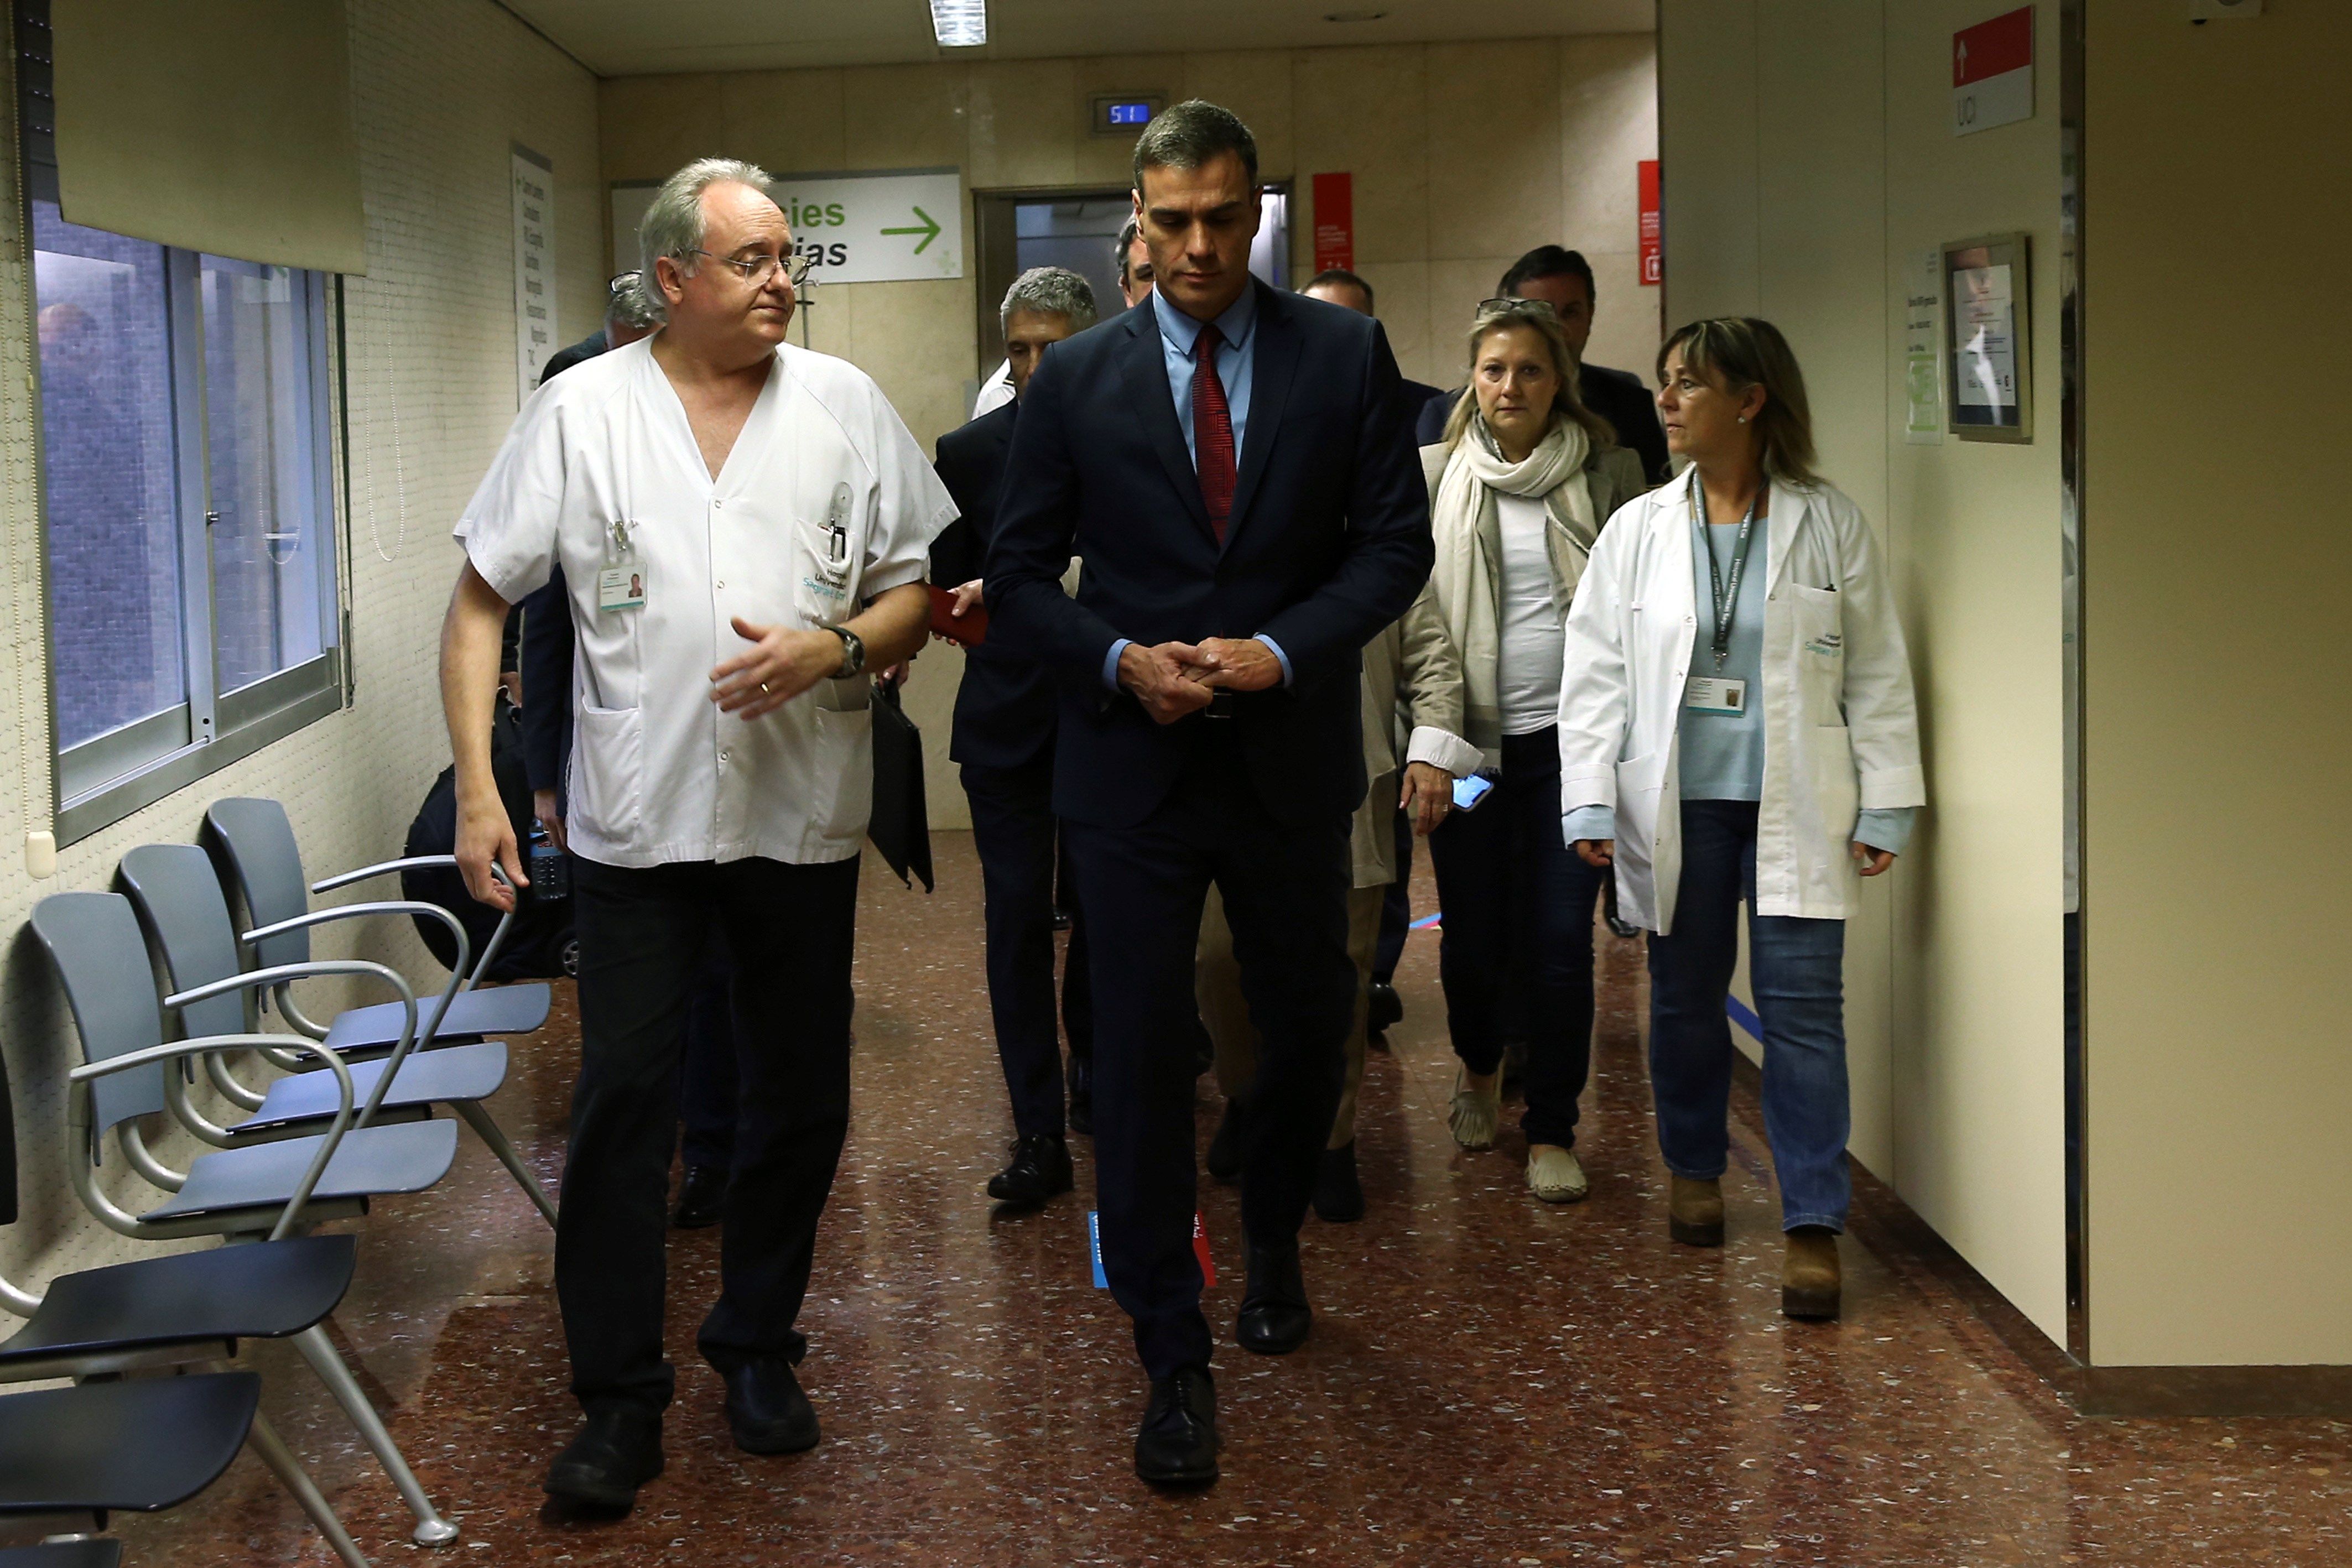 Un metge, a Sánchez: "Et salvaria la vida, però em repugnes per com tractes Catalunya"